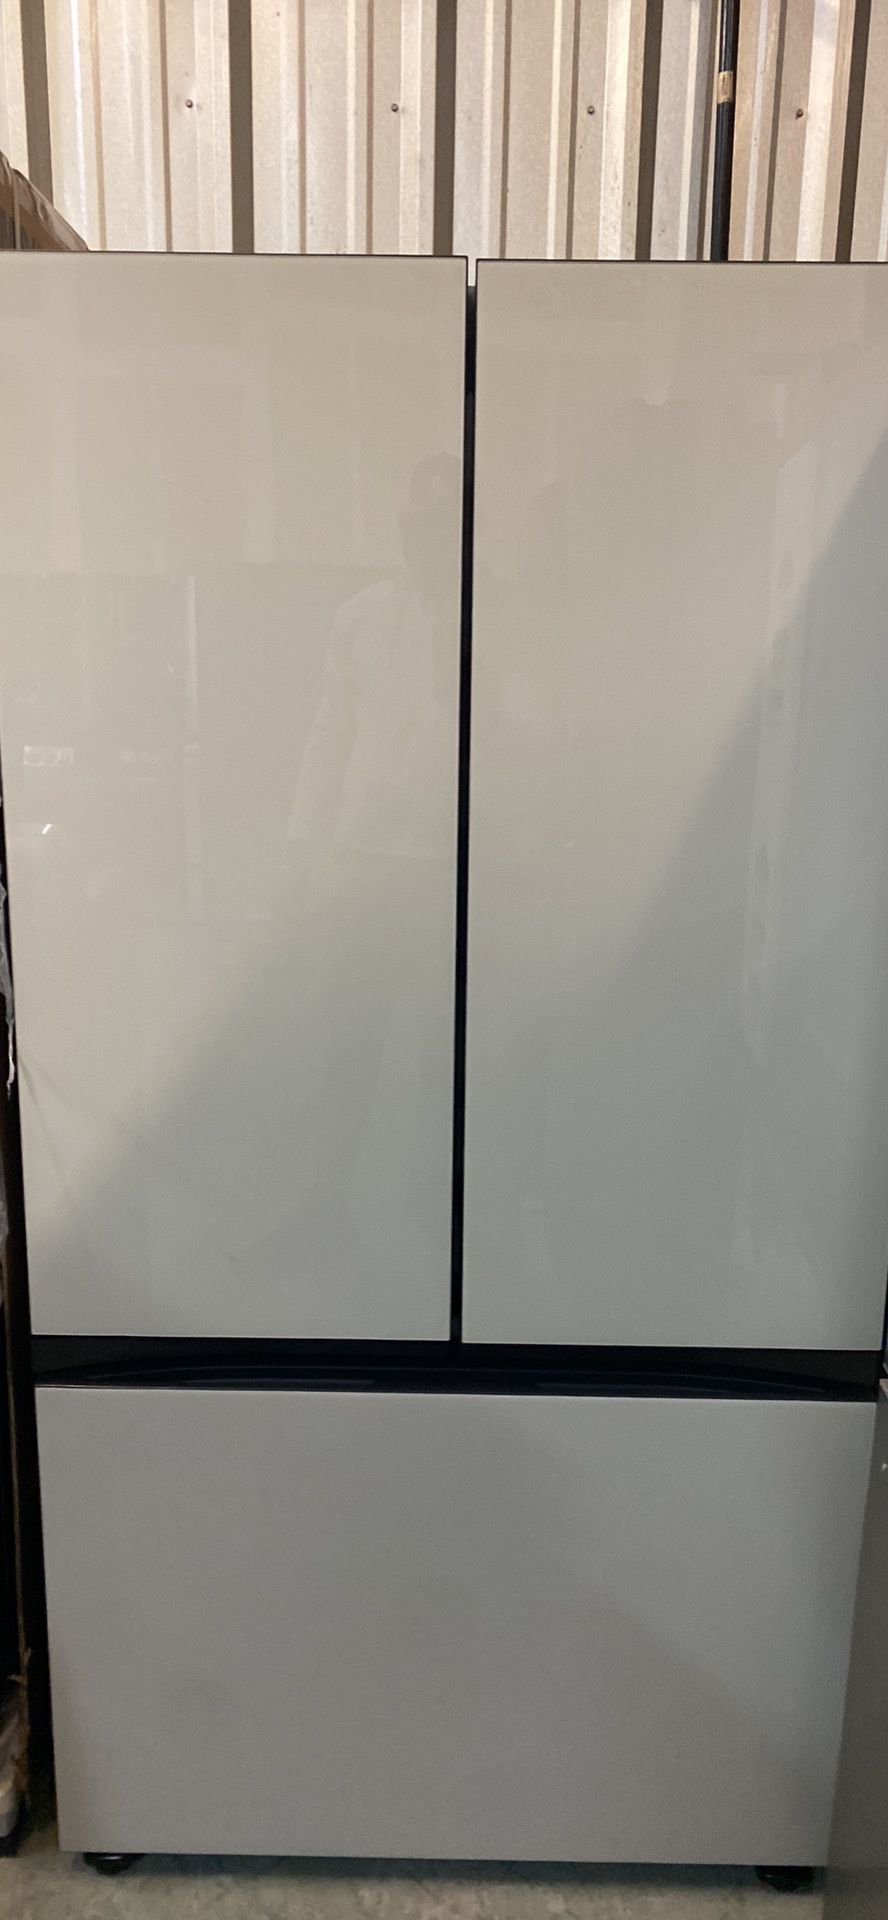 Samsung Refrigerator Bespoke 3 Door